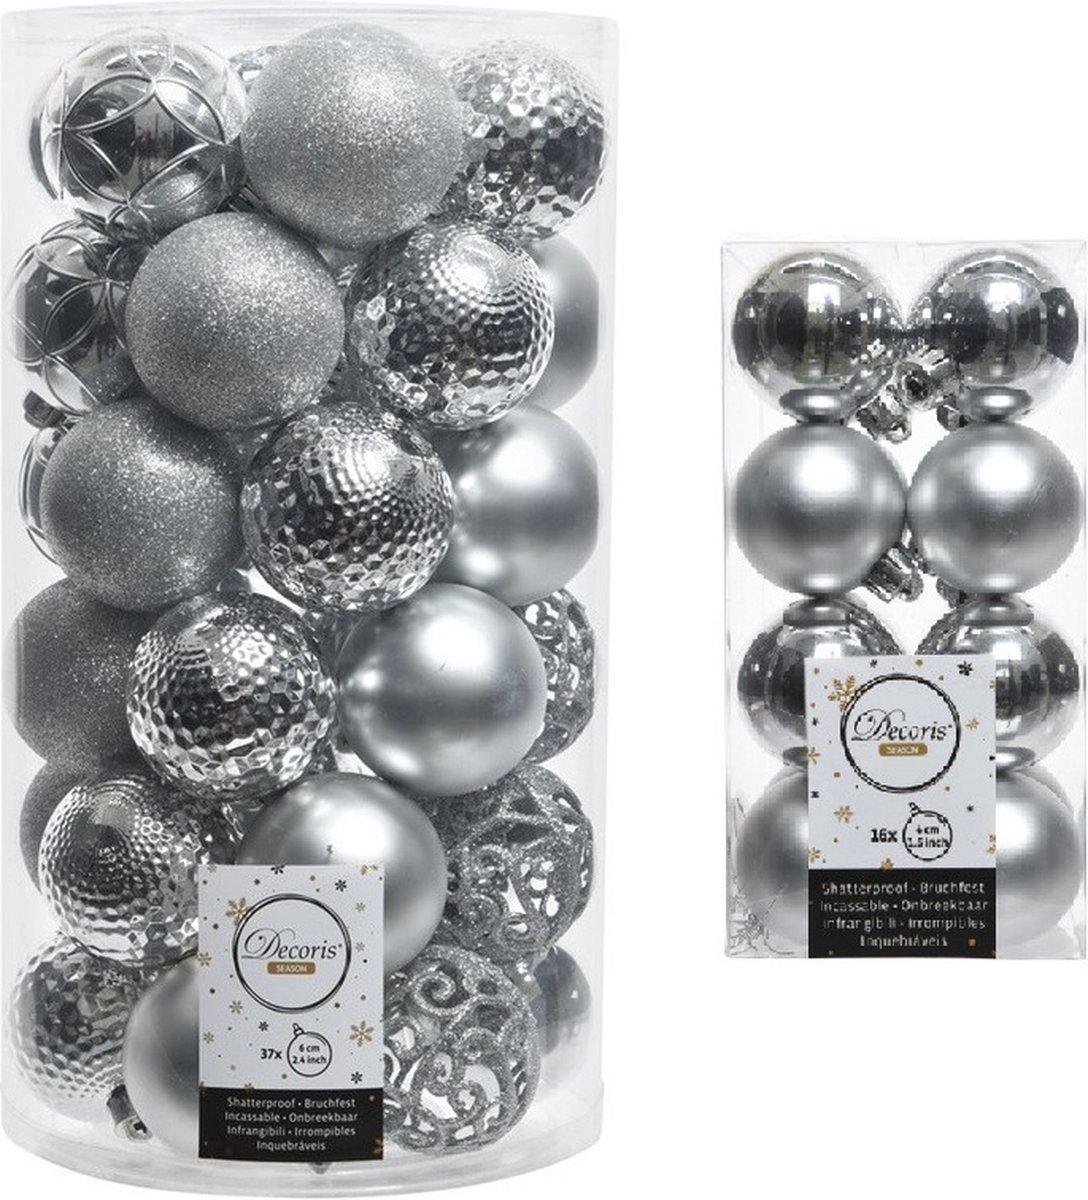 Kerstversiering kunststof kerstballen zilver 4-6 cm pakket van 53x stuks - Kerstboomversiering